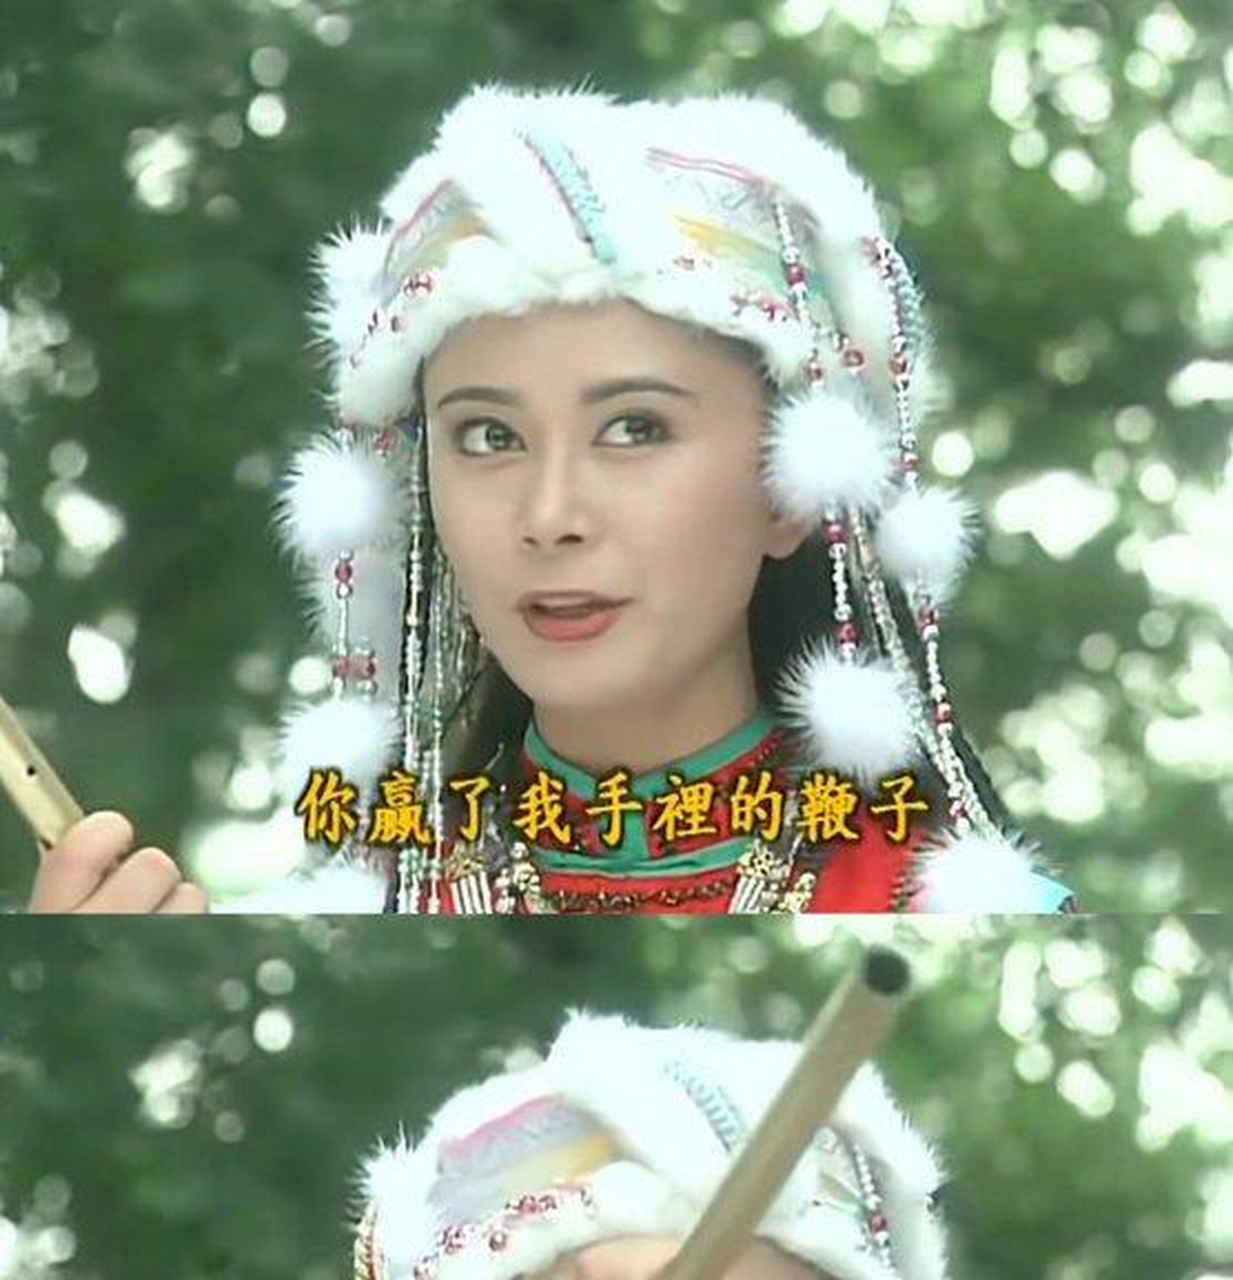 1998年《还珠格格,张恒饰演西藏塞娅公主,美丽自信,娇蛮可爱